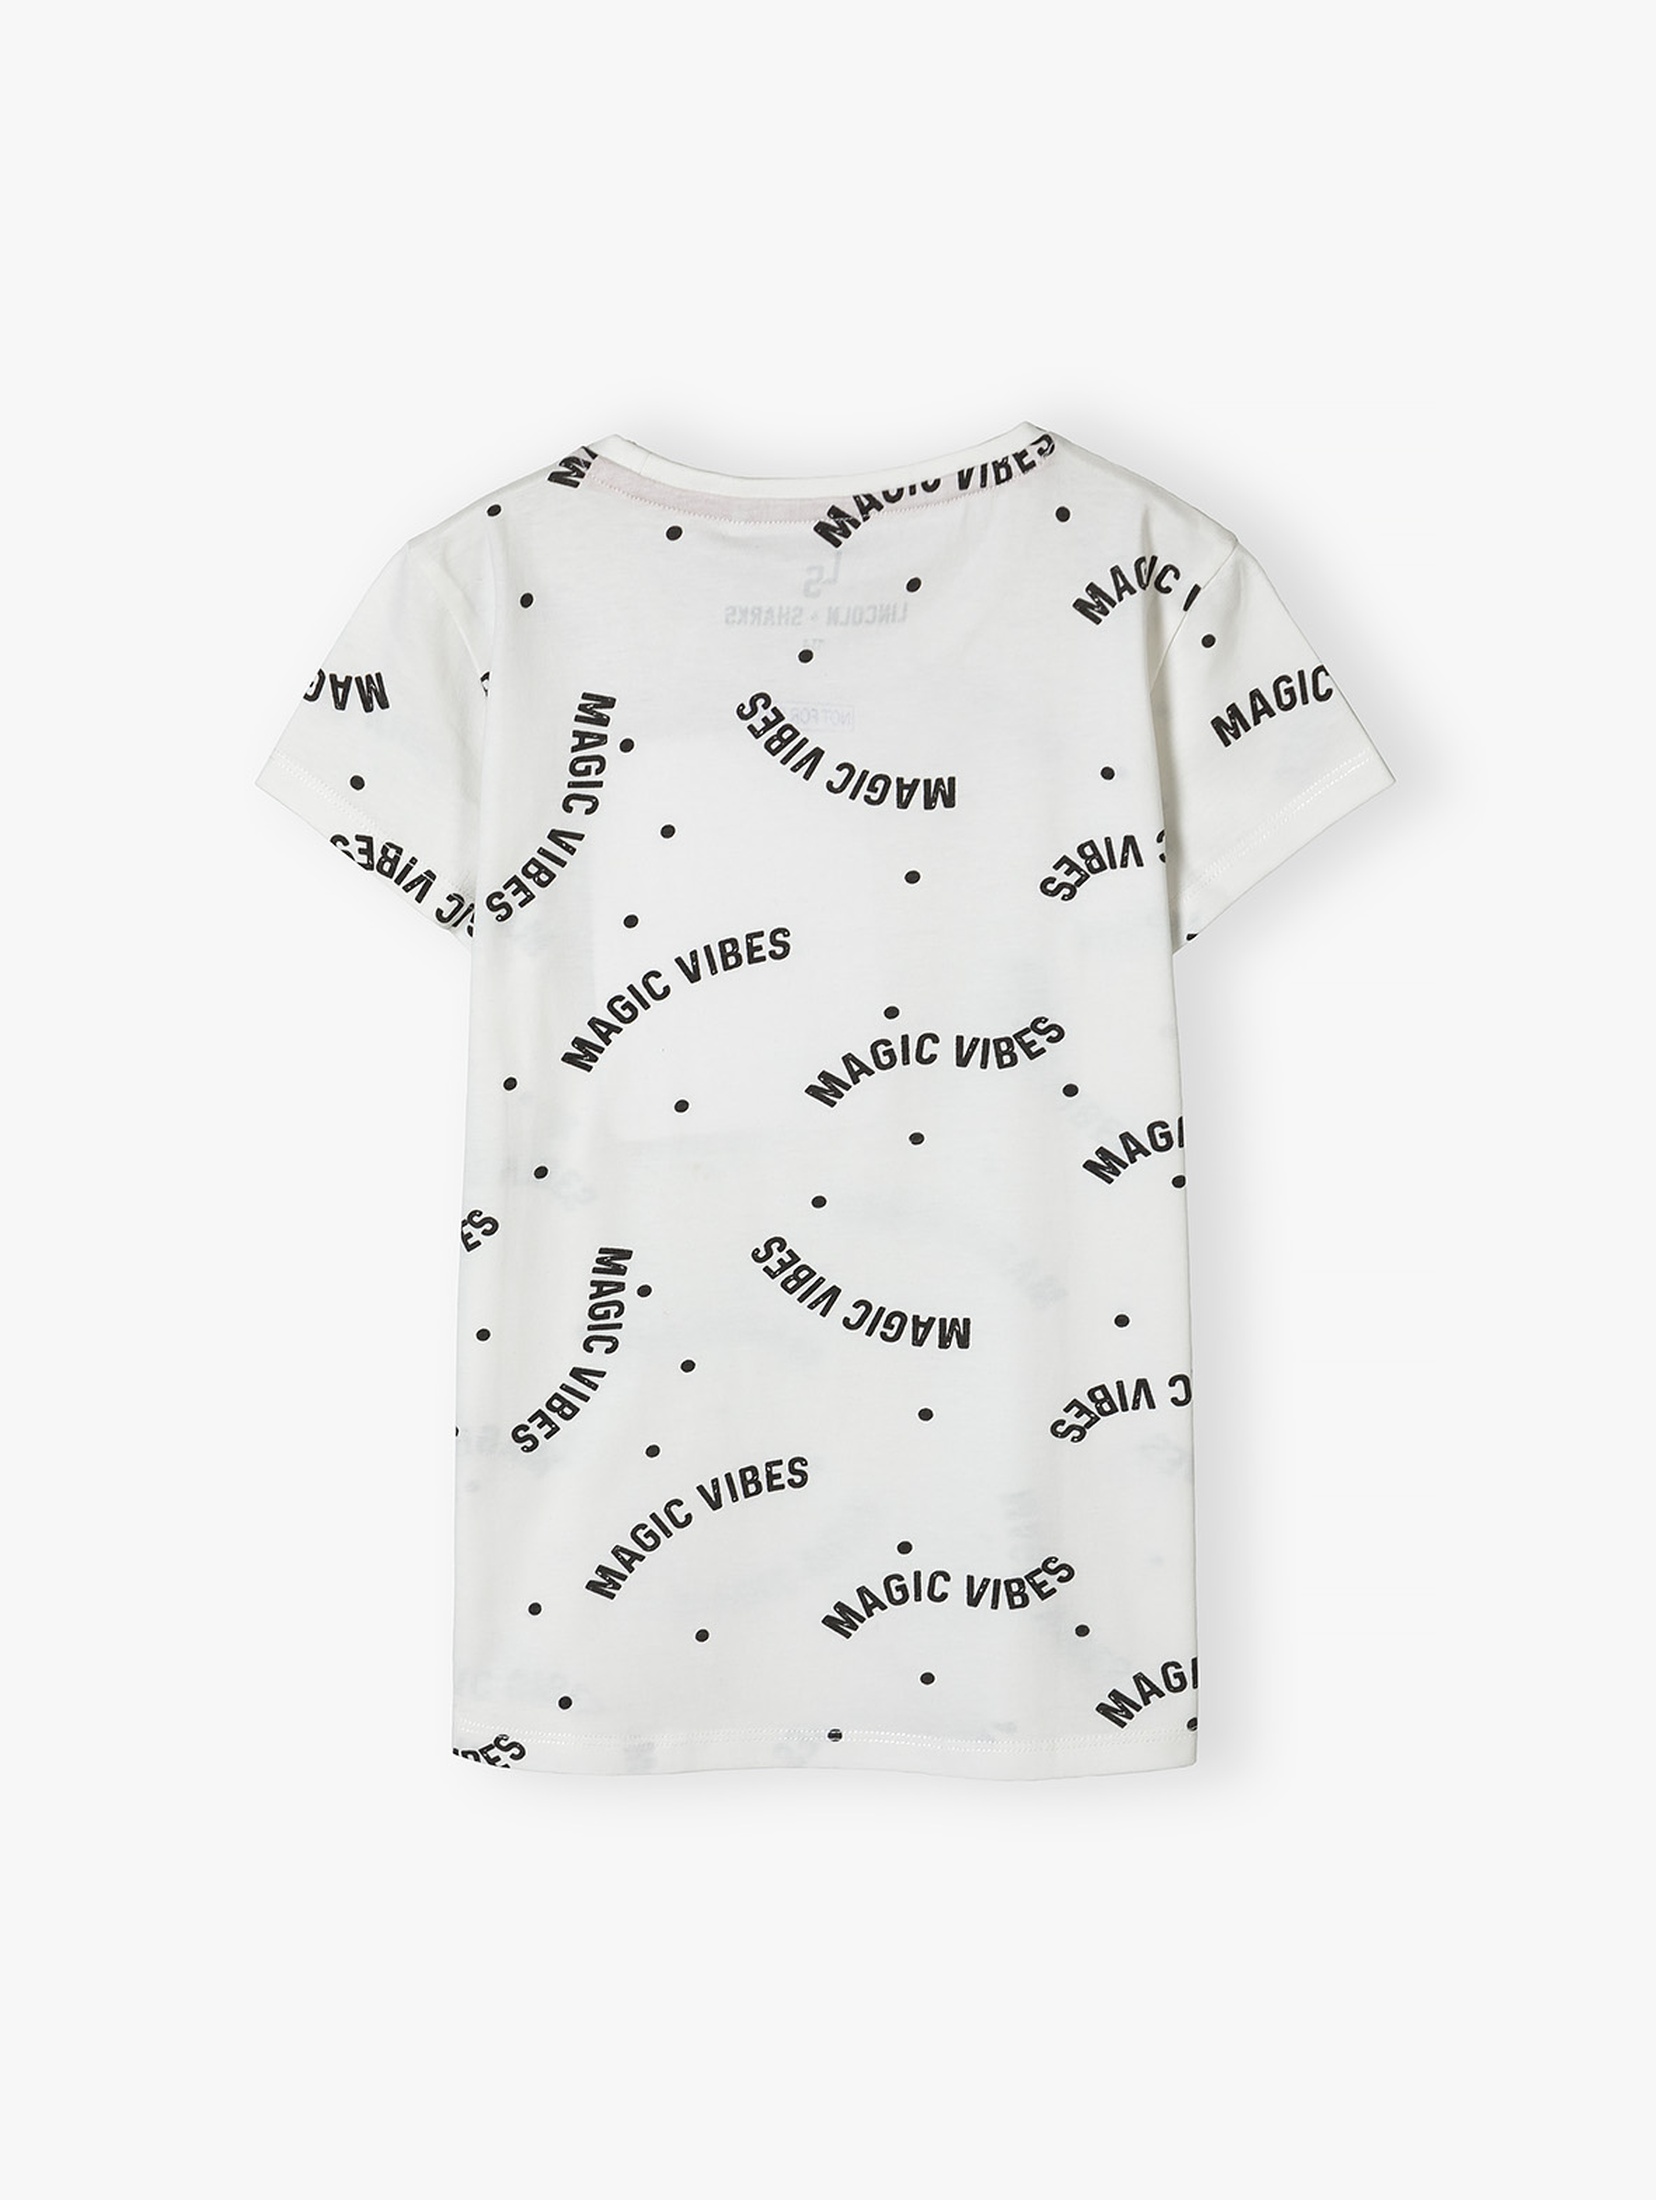 Kremowy t-shirt bawełniany dla dziewczynki z napisami Magic Vibes